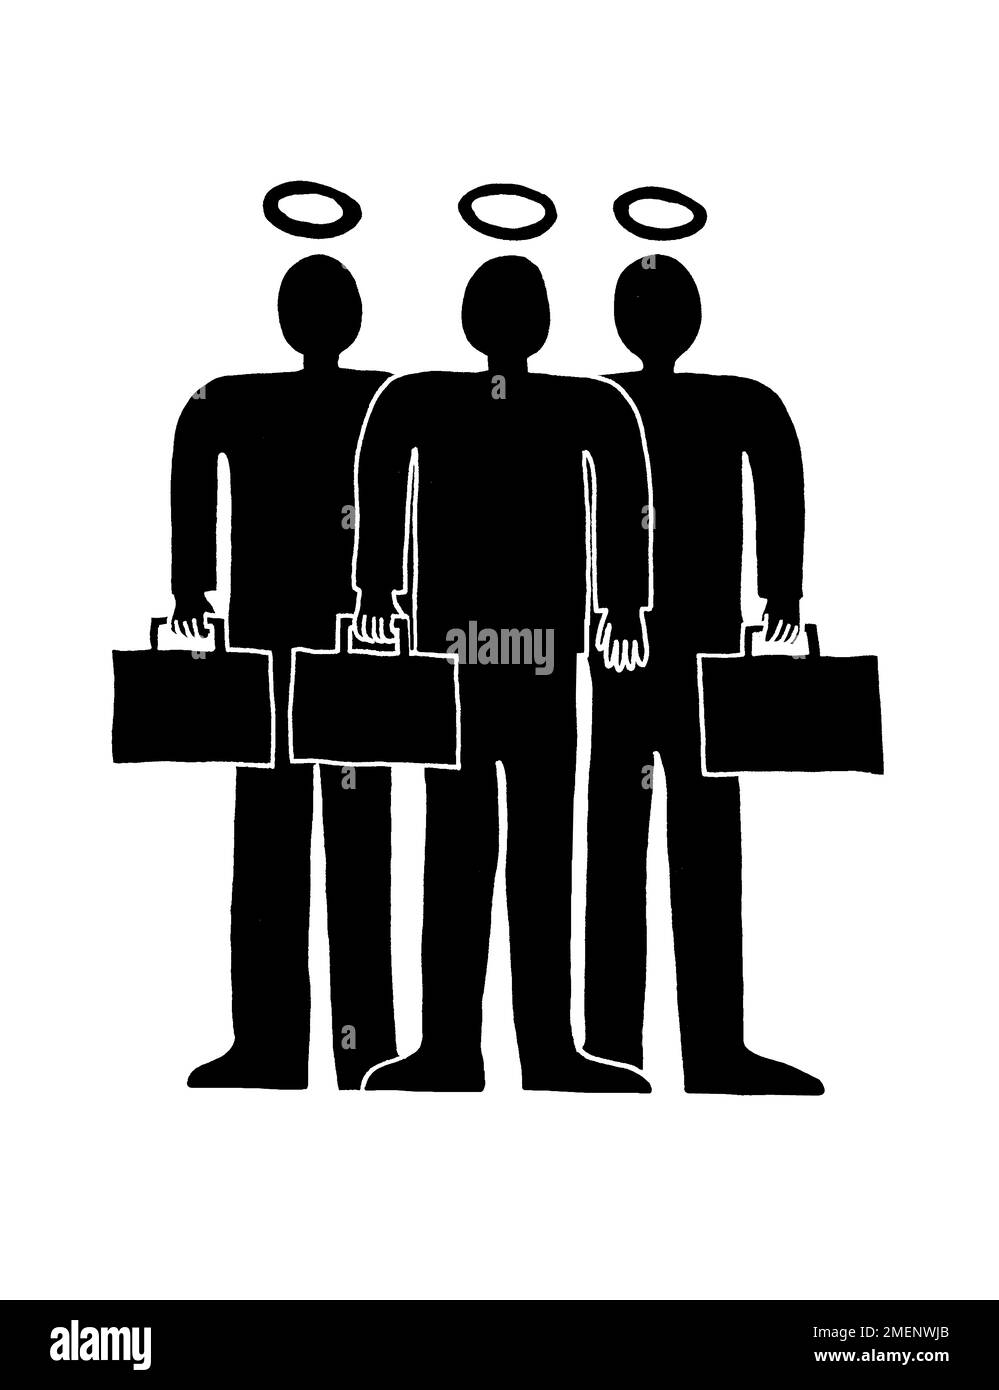 Illustrazione in bianco e nero di tre uomini d'affari con borse portadocumenti Foto Stock